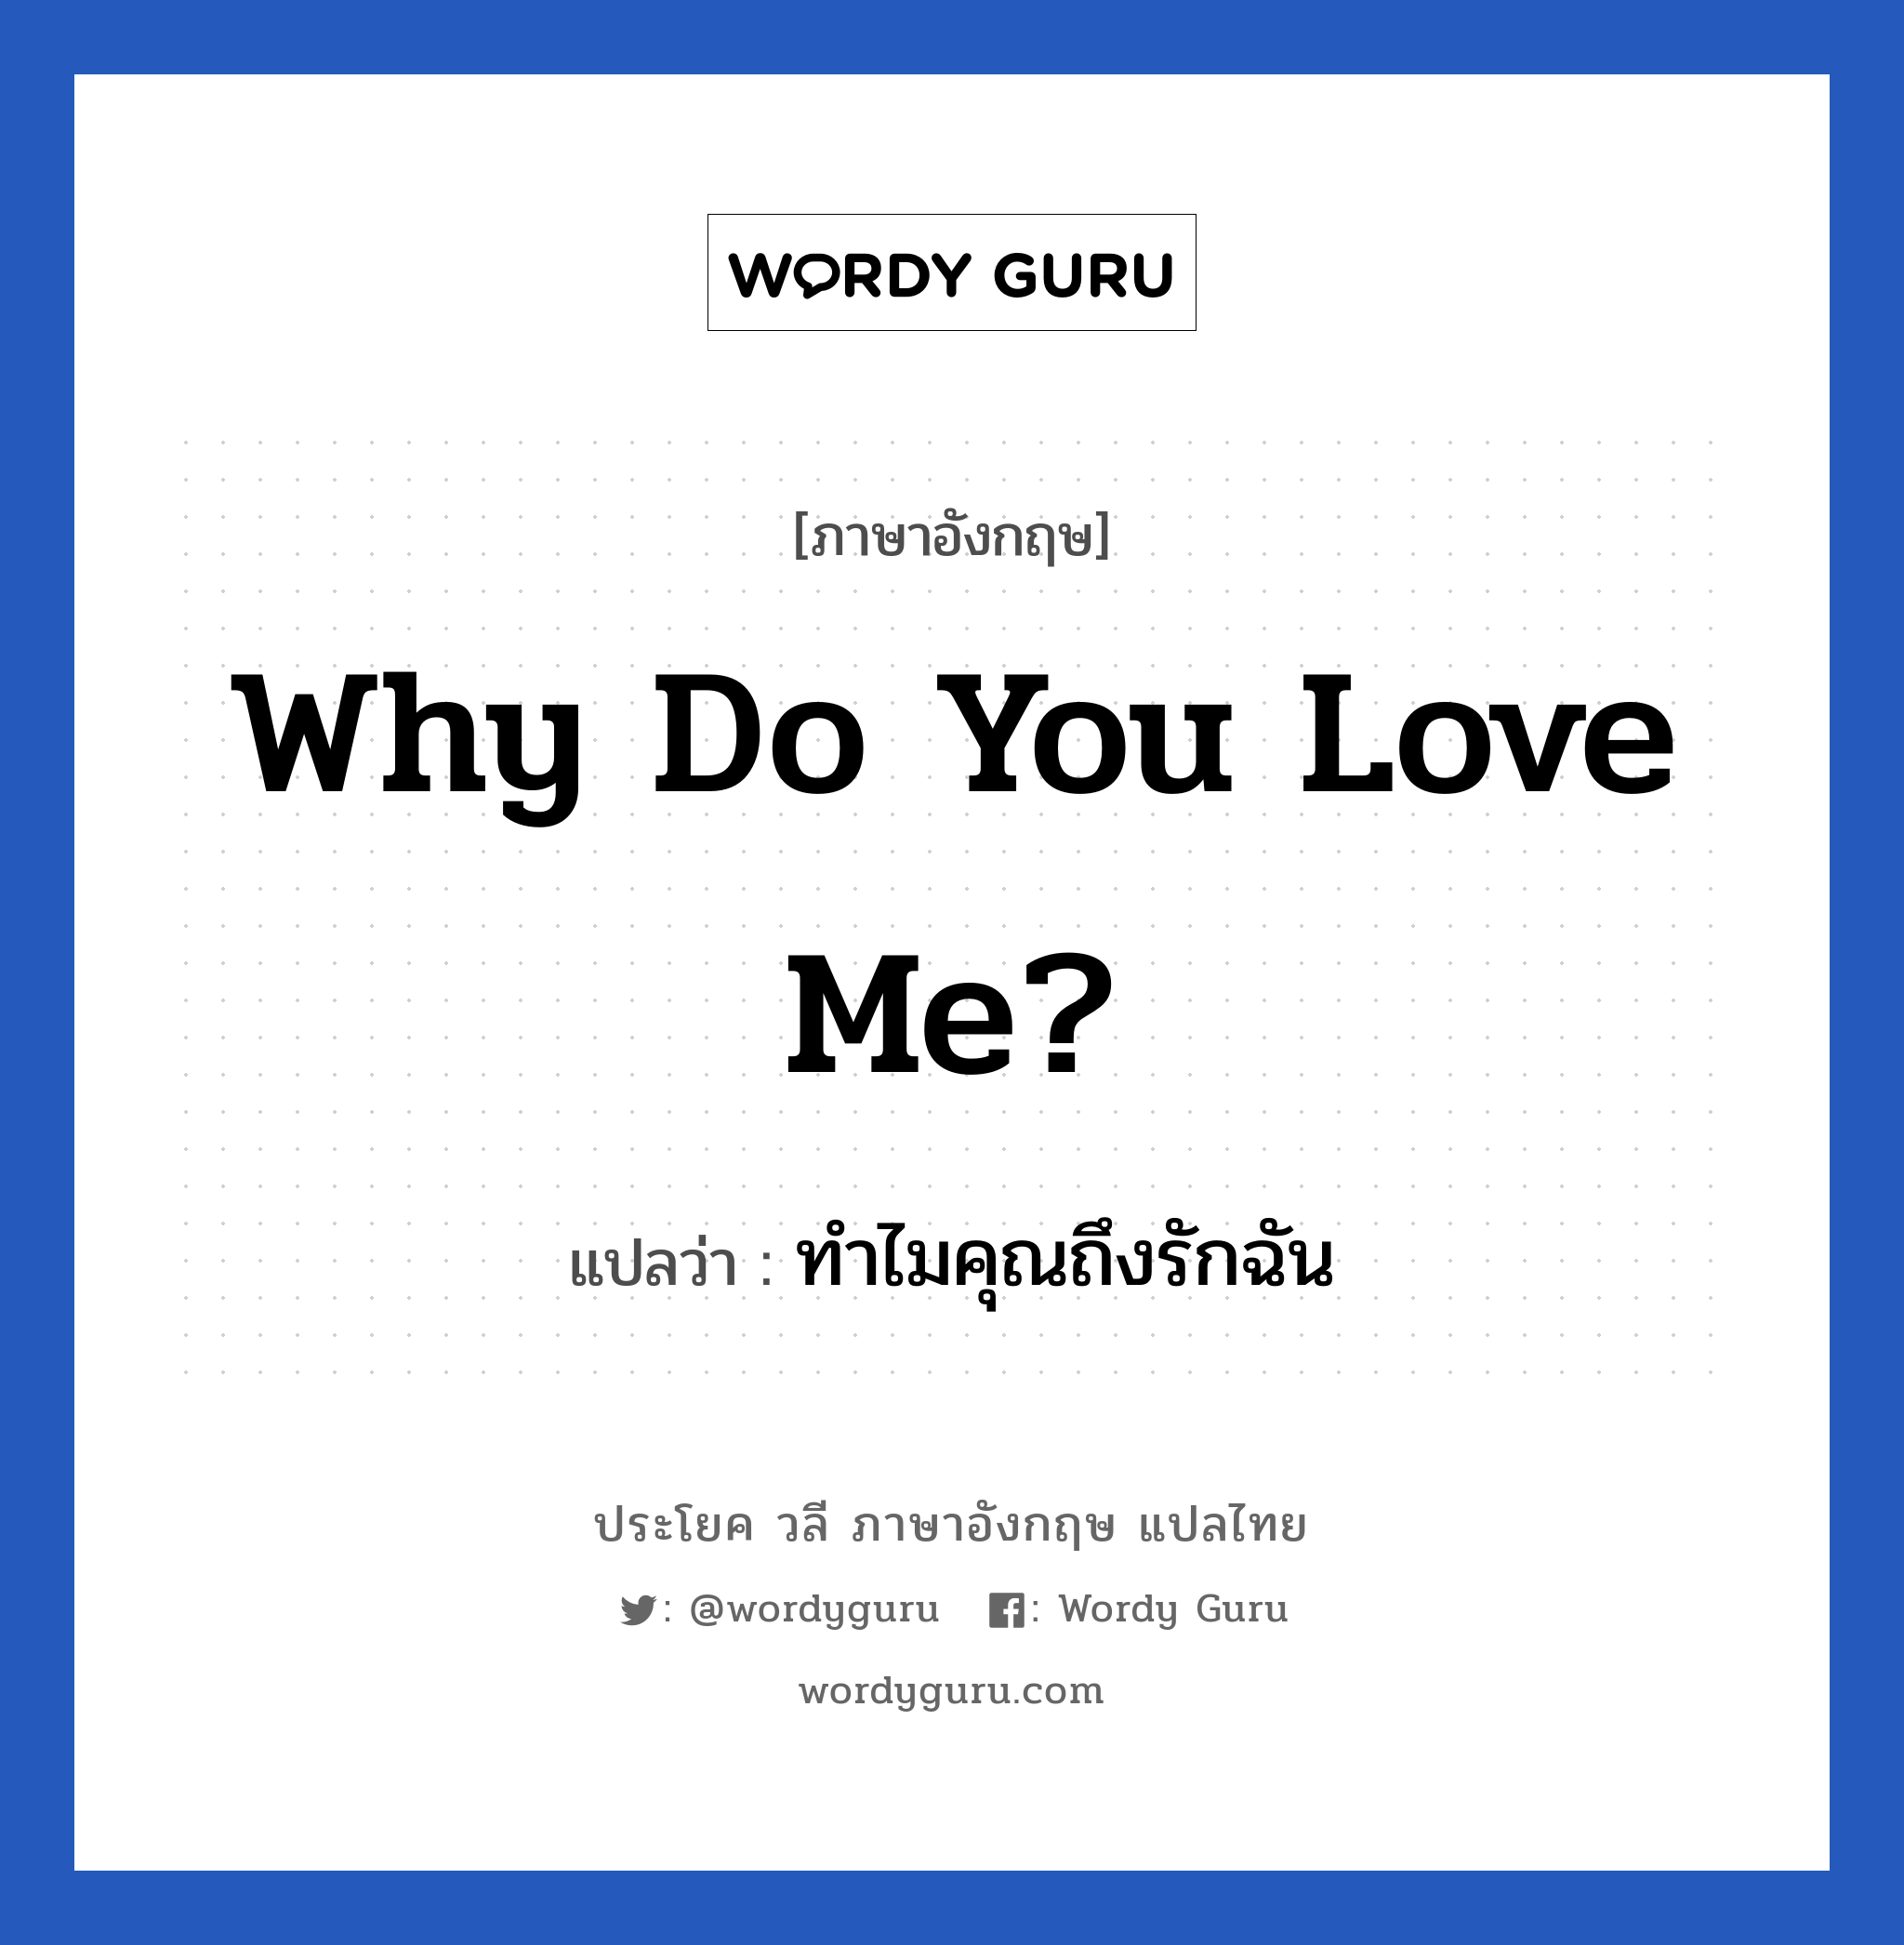 ทำไมคุณถึงรักฉัน ภาษาอังกฤษ?, วลีภาษาอังกฤษ ทำไมคุณถึงรักฉัน แปลว่า Why do you love me?